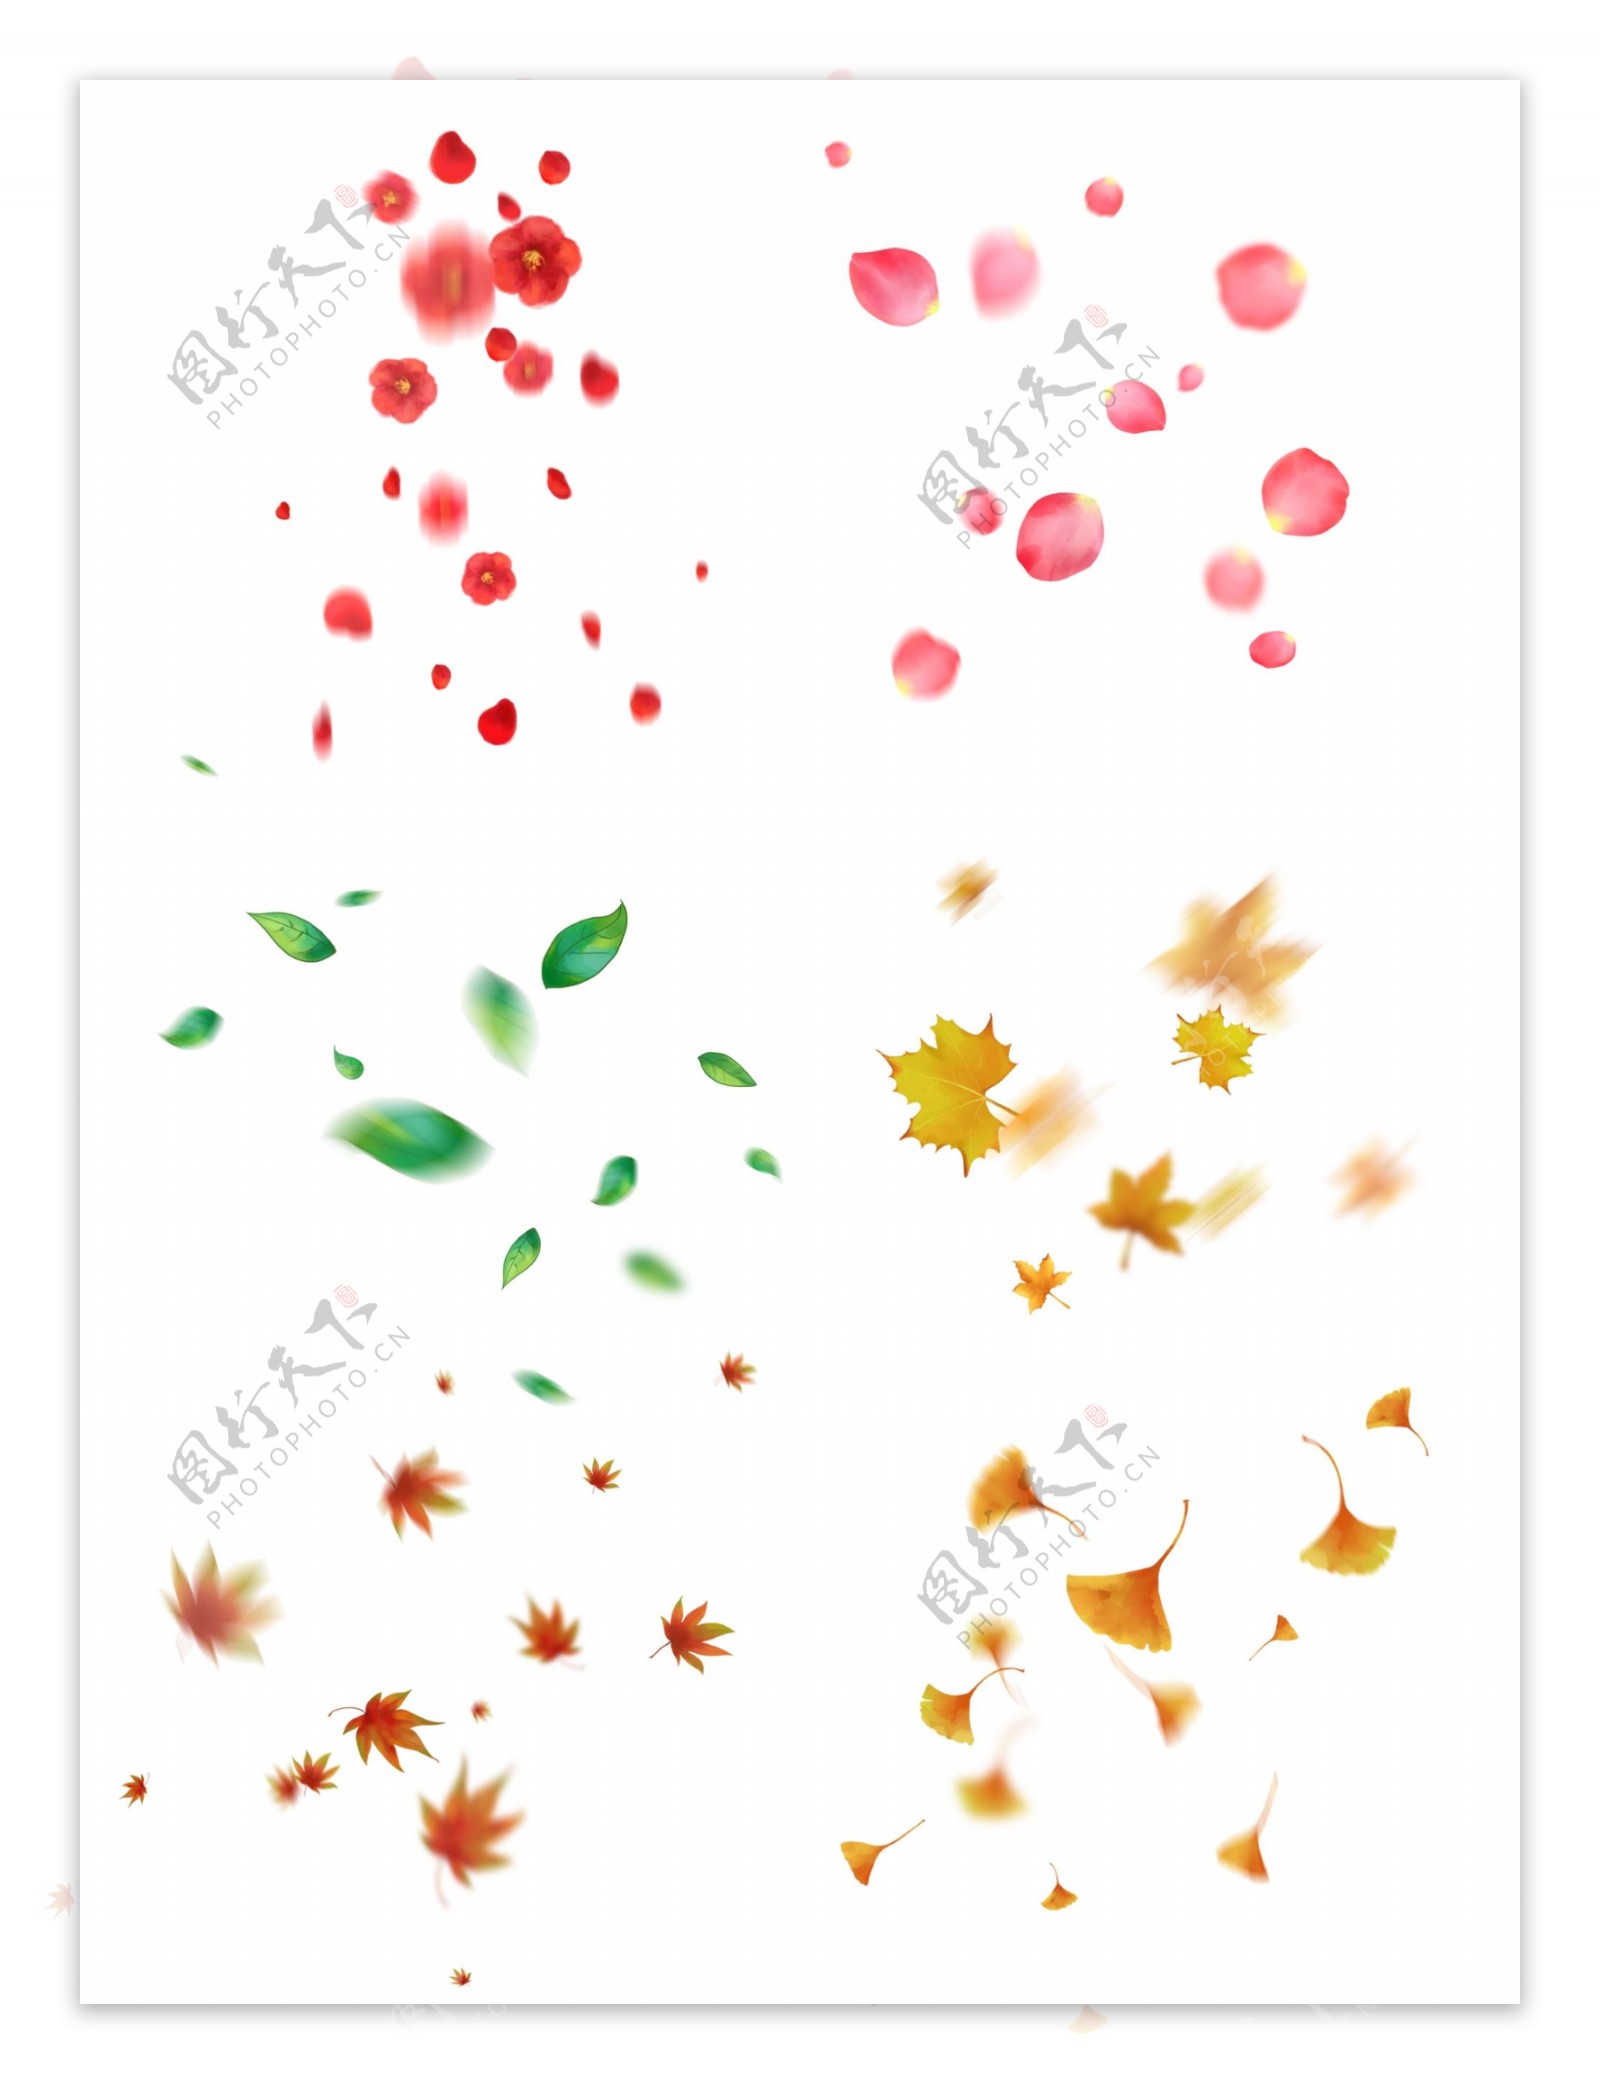 漂浮的花瓣树叶套图手绘落叶和花瓣